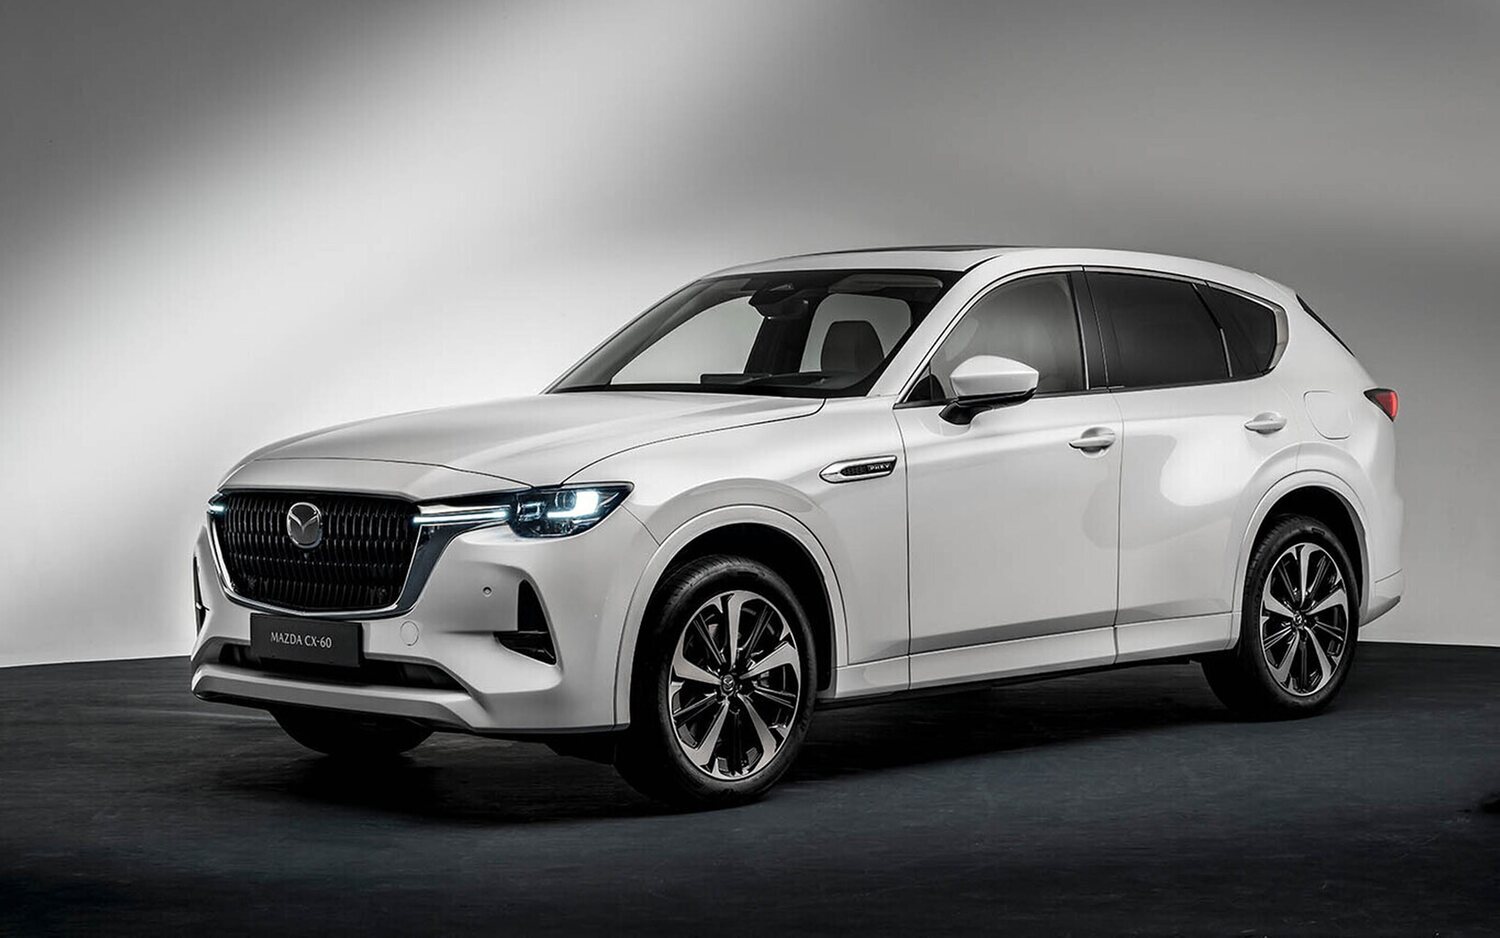 Mazda alerta de la autonomía de los coches eléctricos